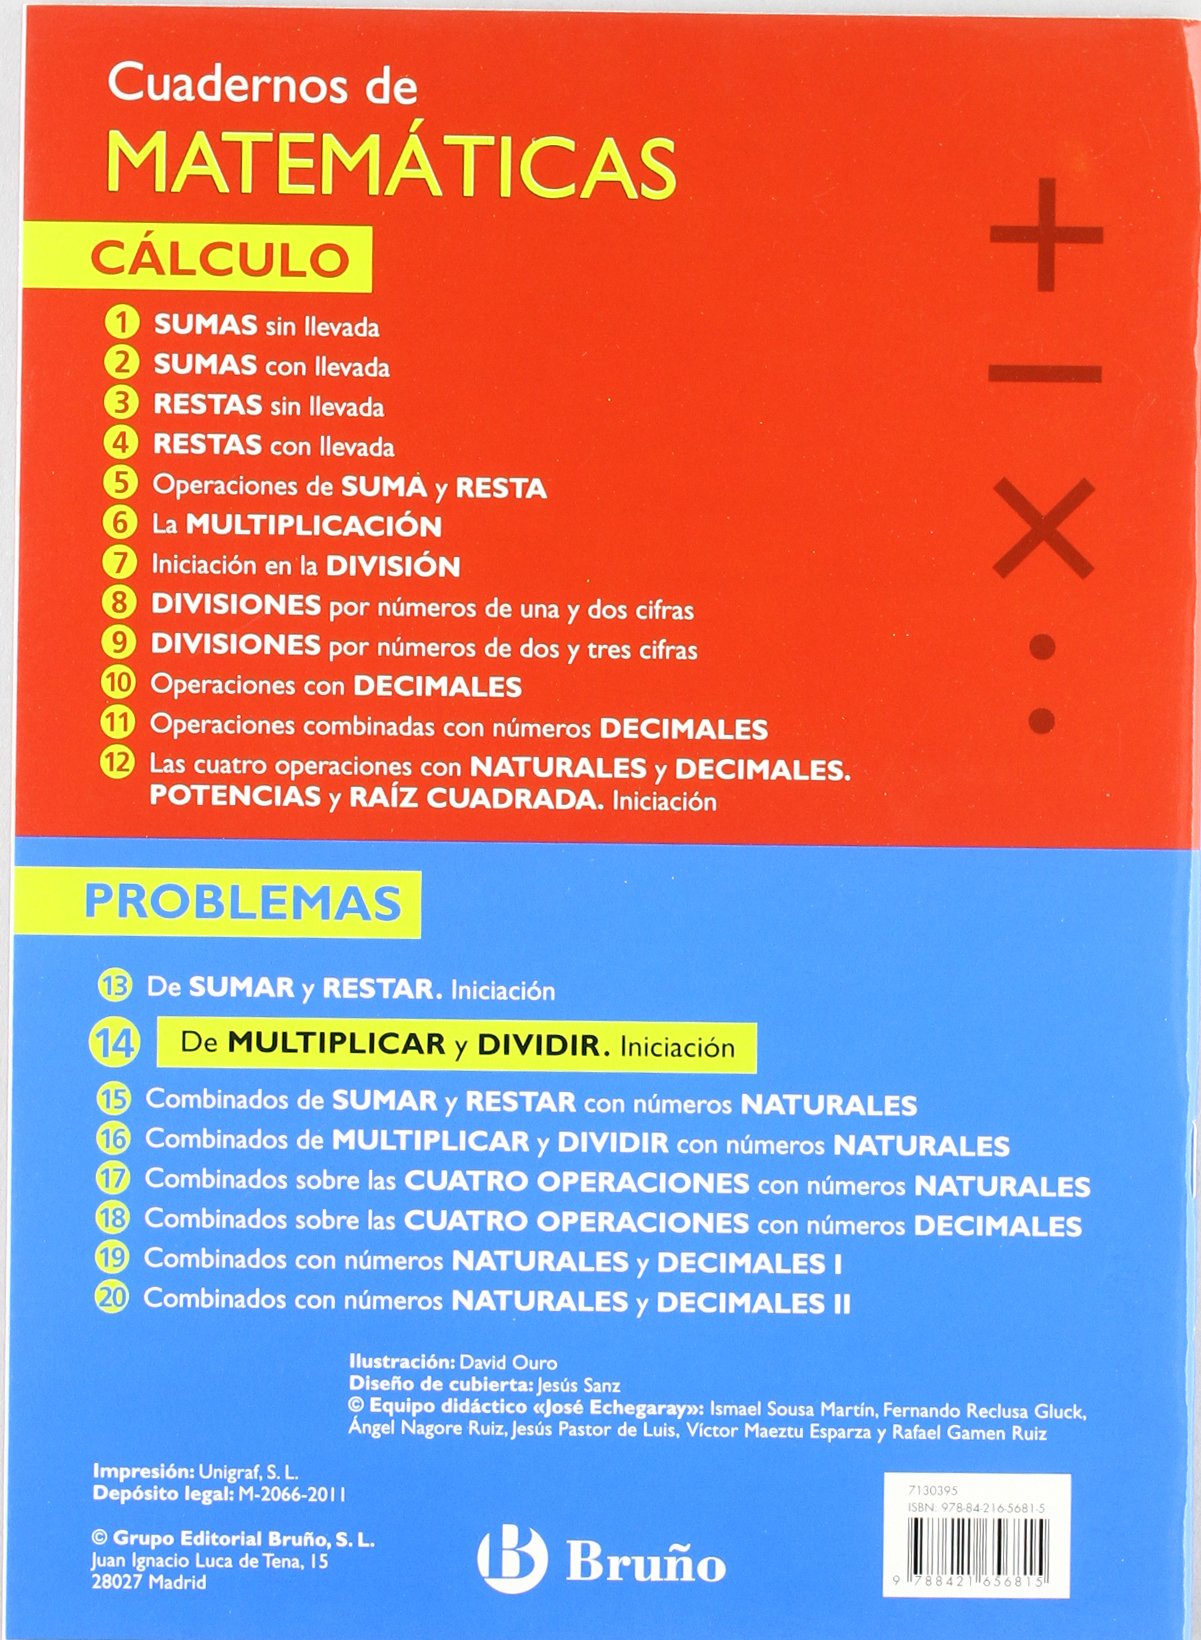 Libro: 14 Problemas de multiplicar y dividir, iniciación. Cuaderno de matemáticas: Problemas por Ismael Sousa Martín